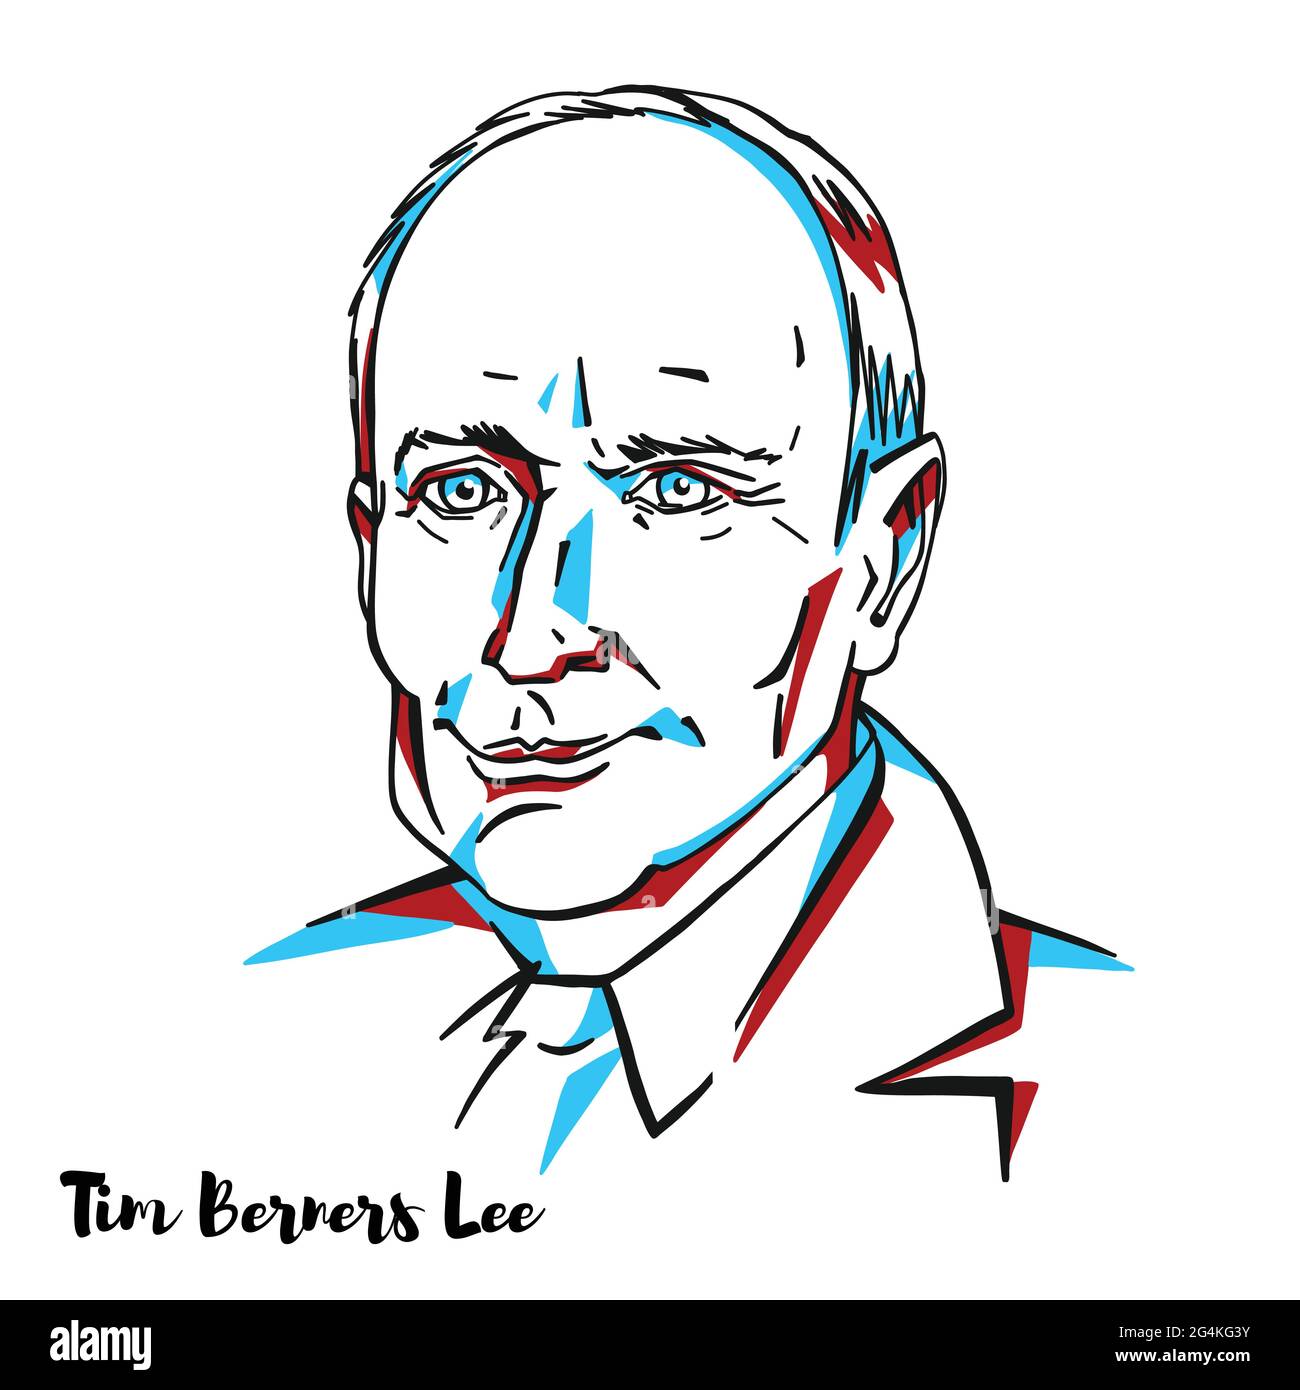 MOSKAU, RUSSLAND - 15. Februar 2020: Tim Berners Lee graviertes Vektorportrait mit Farbkonturen. Englischer Ingenieur und Informatiker, am besten bekannt als Stock Vektor